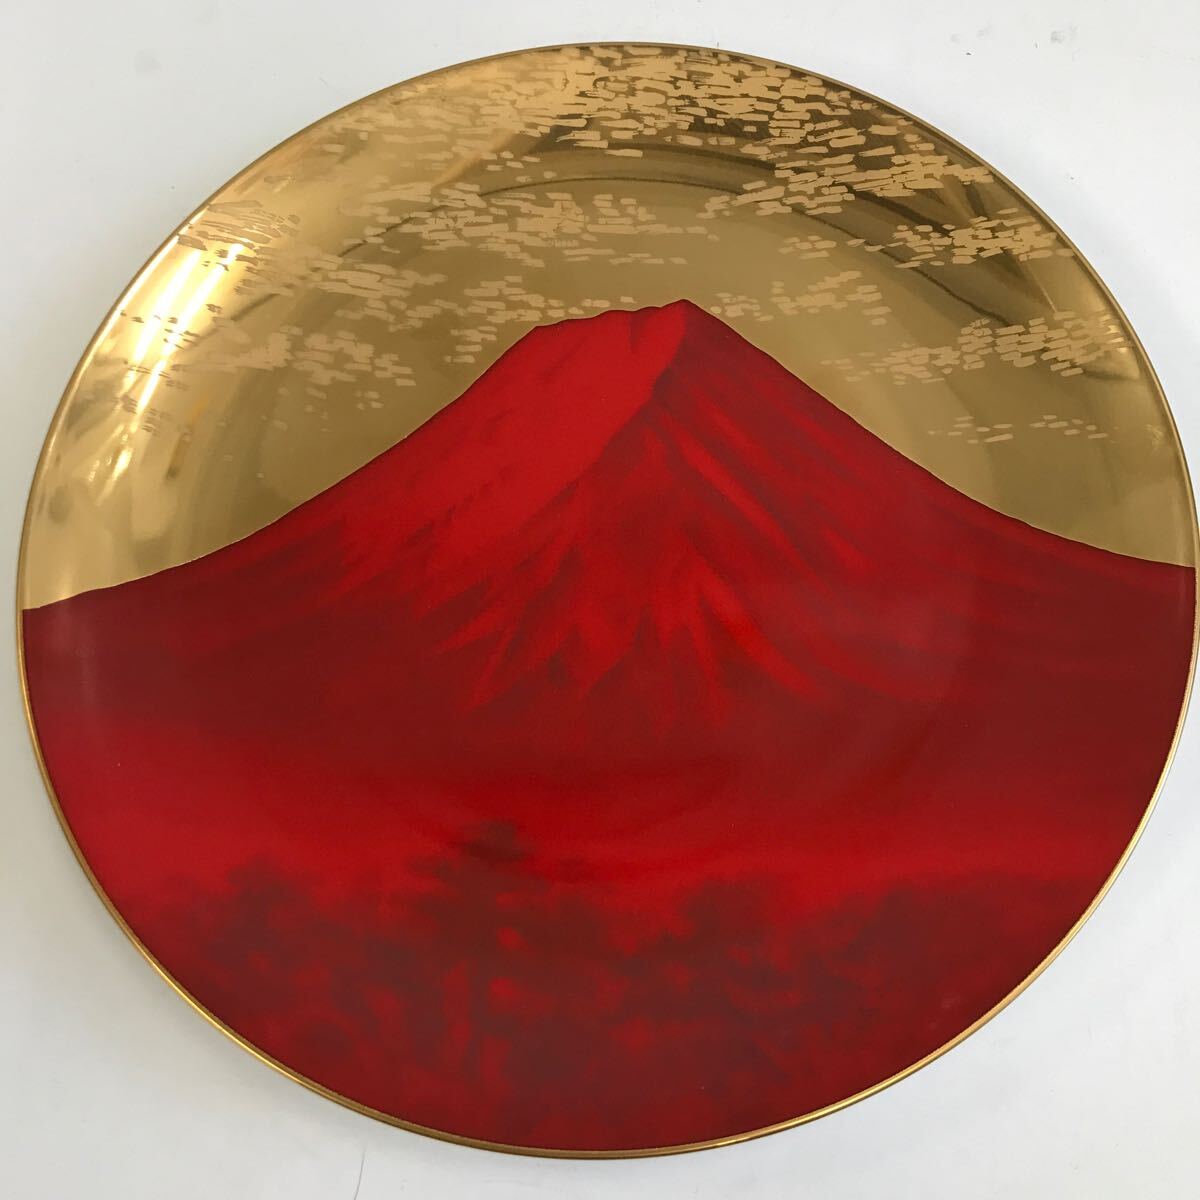 ノリタケ 日産USA 20周年記念 赤富士 金彩プレート 飾皿 レトロ noritakeの画像1